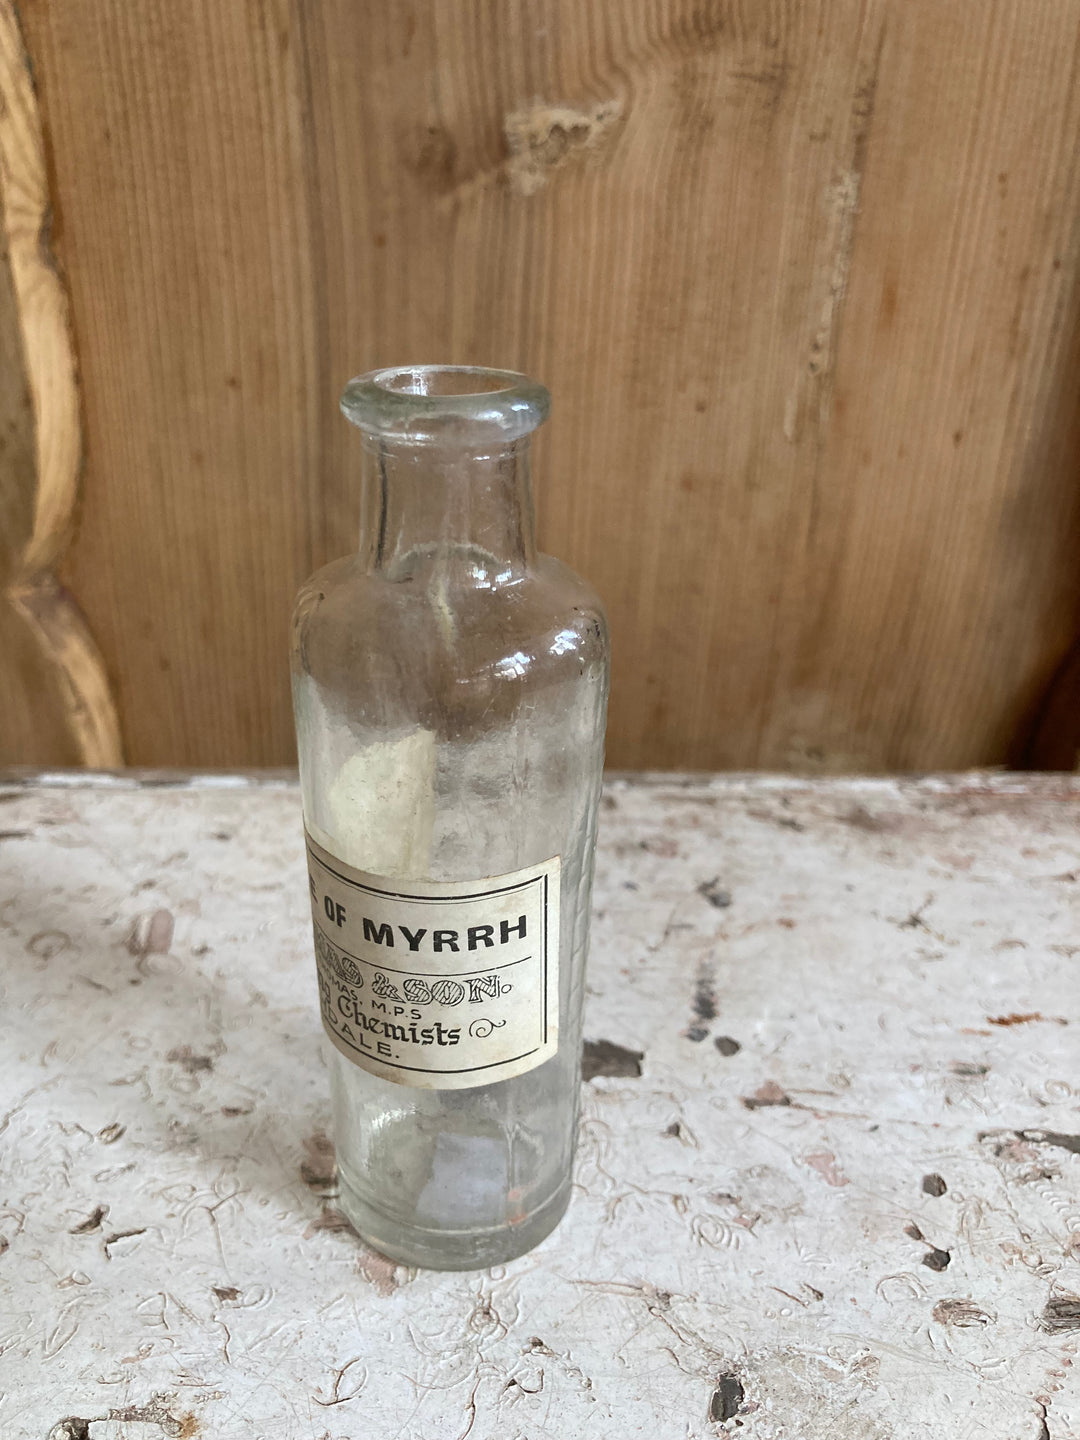 Vintage Chemist Tincture of Myrrh